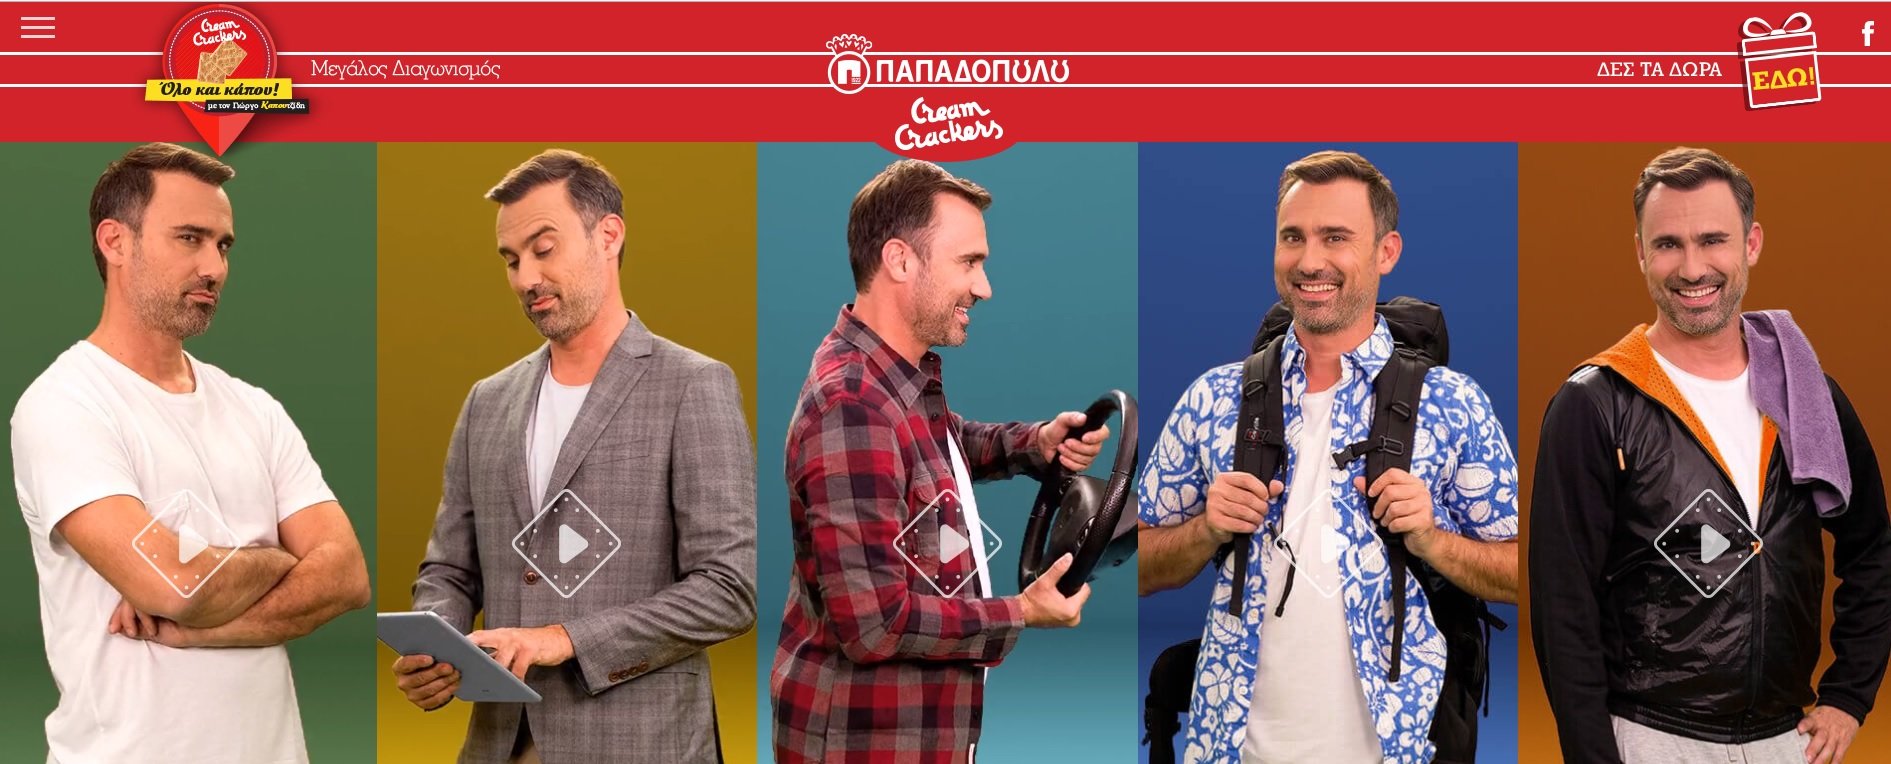 Ο Γιώργος Καπουτζίδης σε 5 διασκεδαστικά videos με τα αγαπημένα του Cream Crackers ΠΑΠΑΔΟΠΟΥΛΟΥ!